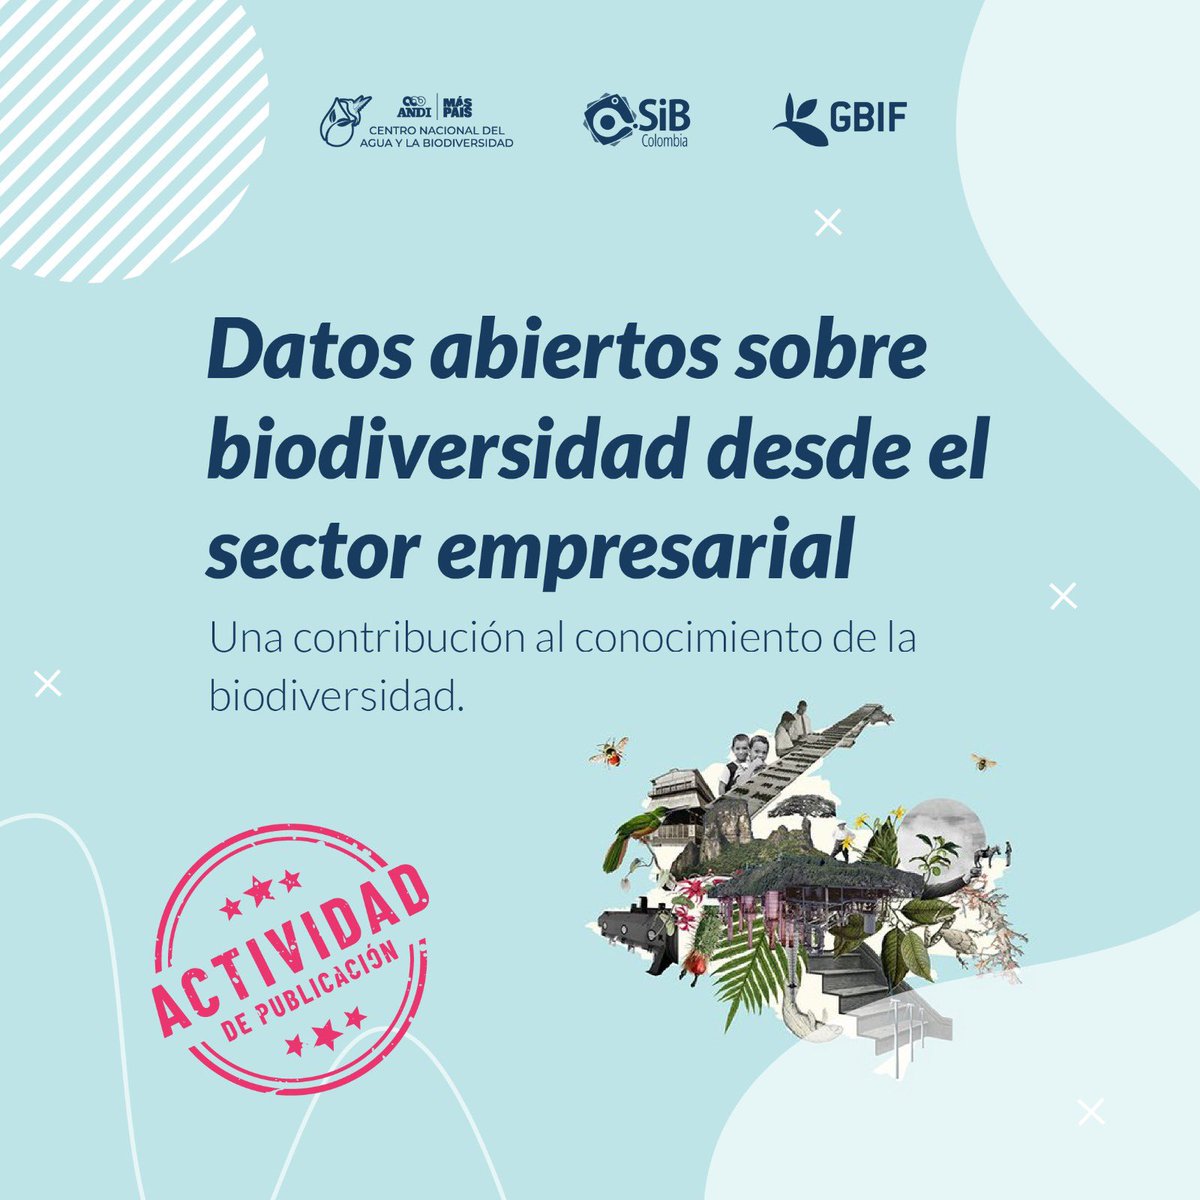 La contribución al conocimiento de la #Biodiversidad con #DatosAbiertos del sector empresarial sigue creciendo! @COP16Colombia 

Aquí te contamos como va la publicación 2024 en @sibcolombia y @GBIF

#SostenibilidadANDI #BiodiversidadyDesarrollo #CrearCompartirTransformar 

Va 🧵